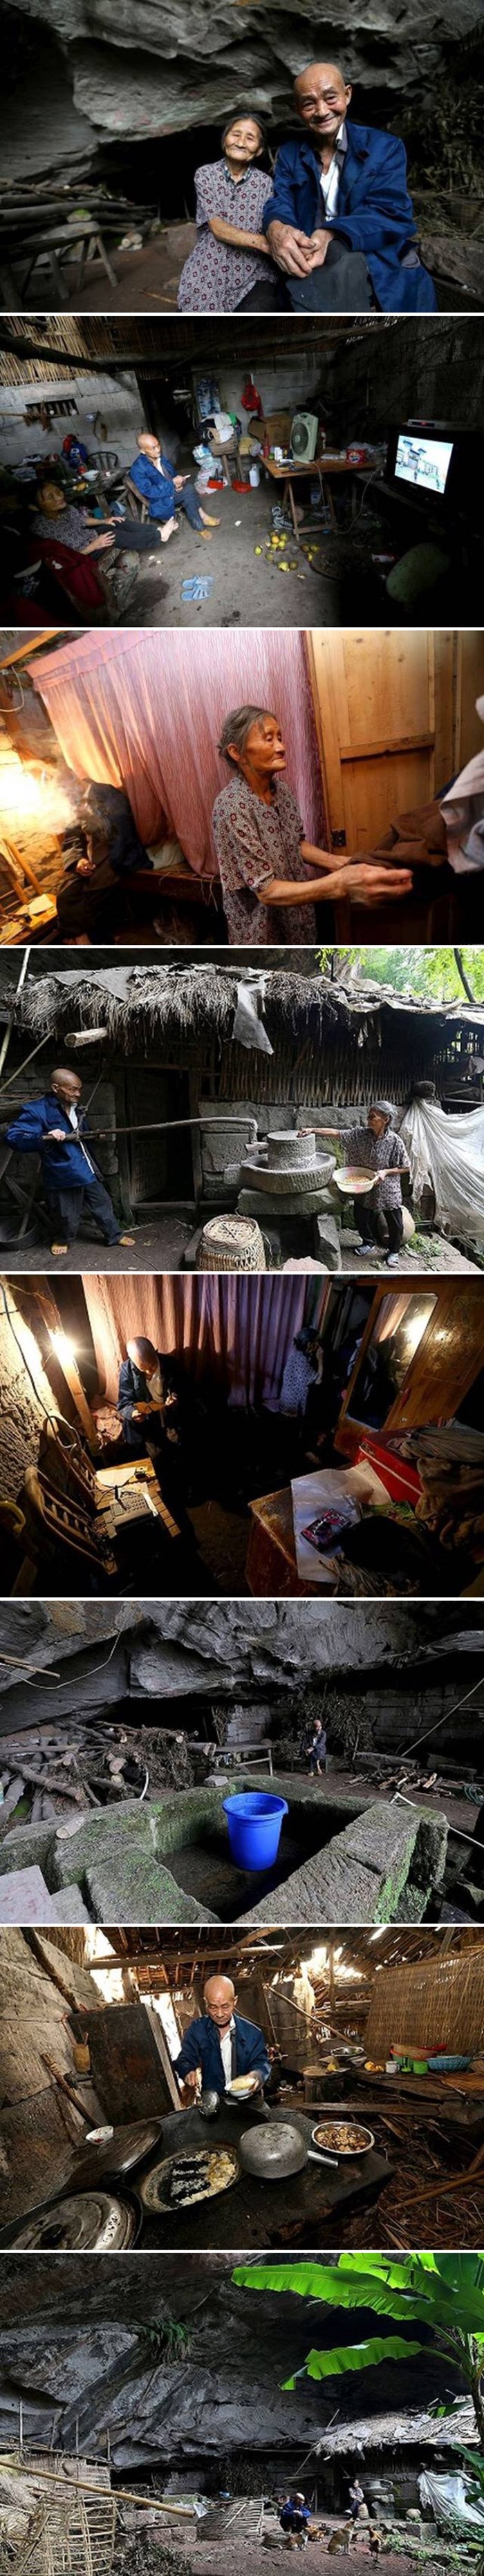 Kineski bračni par već pola stoljeća živi u pećini, evo kako izgleda njihov život u izolaciji